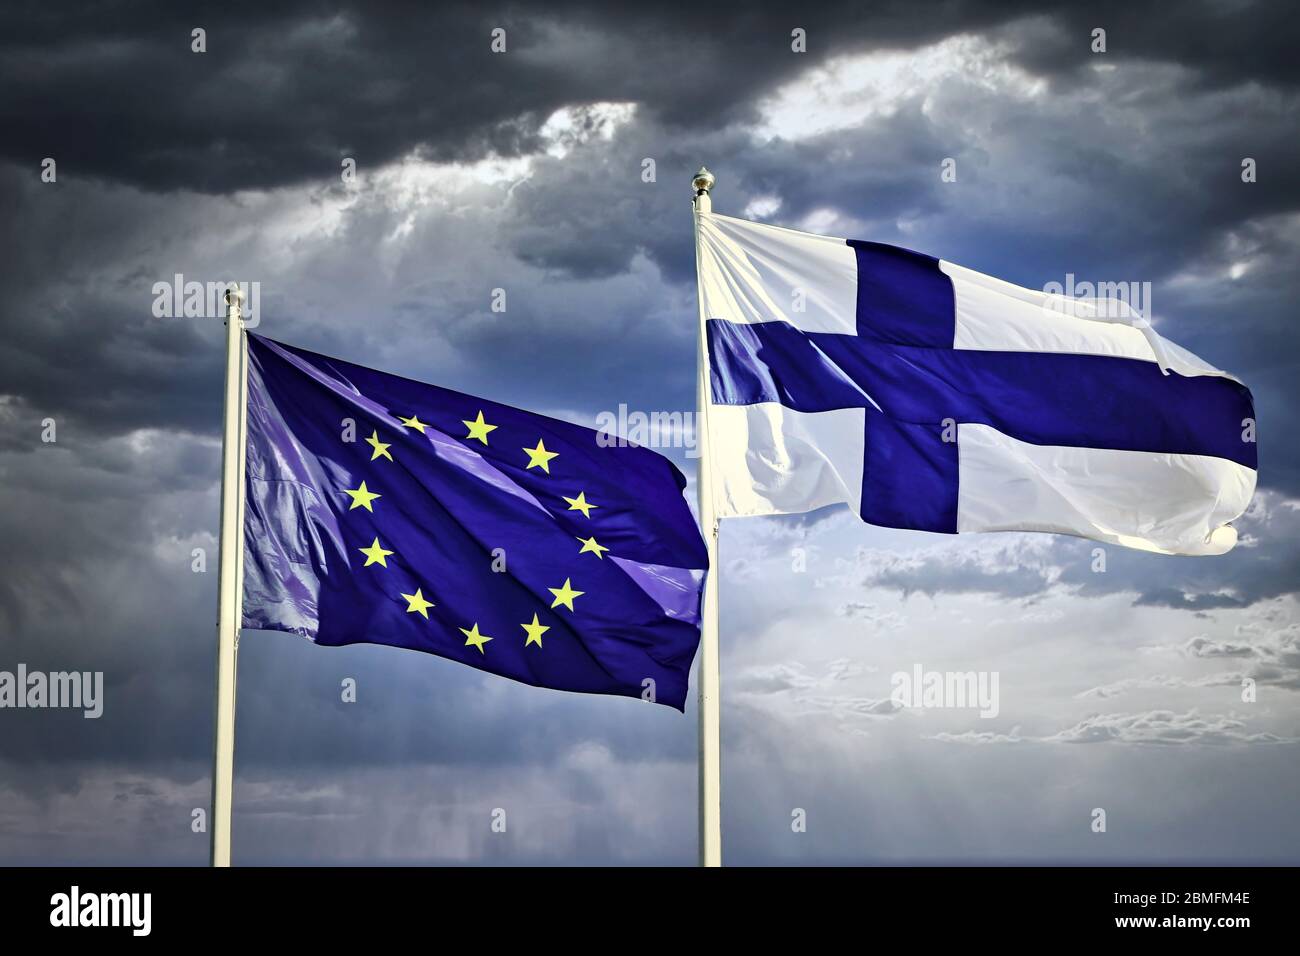 Bandiere dell'UE e della Finlandia contro il cielo drammatico, oscuro e nuvoloso. Foto Stock